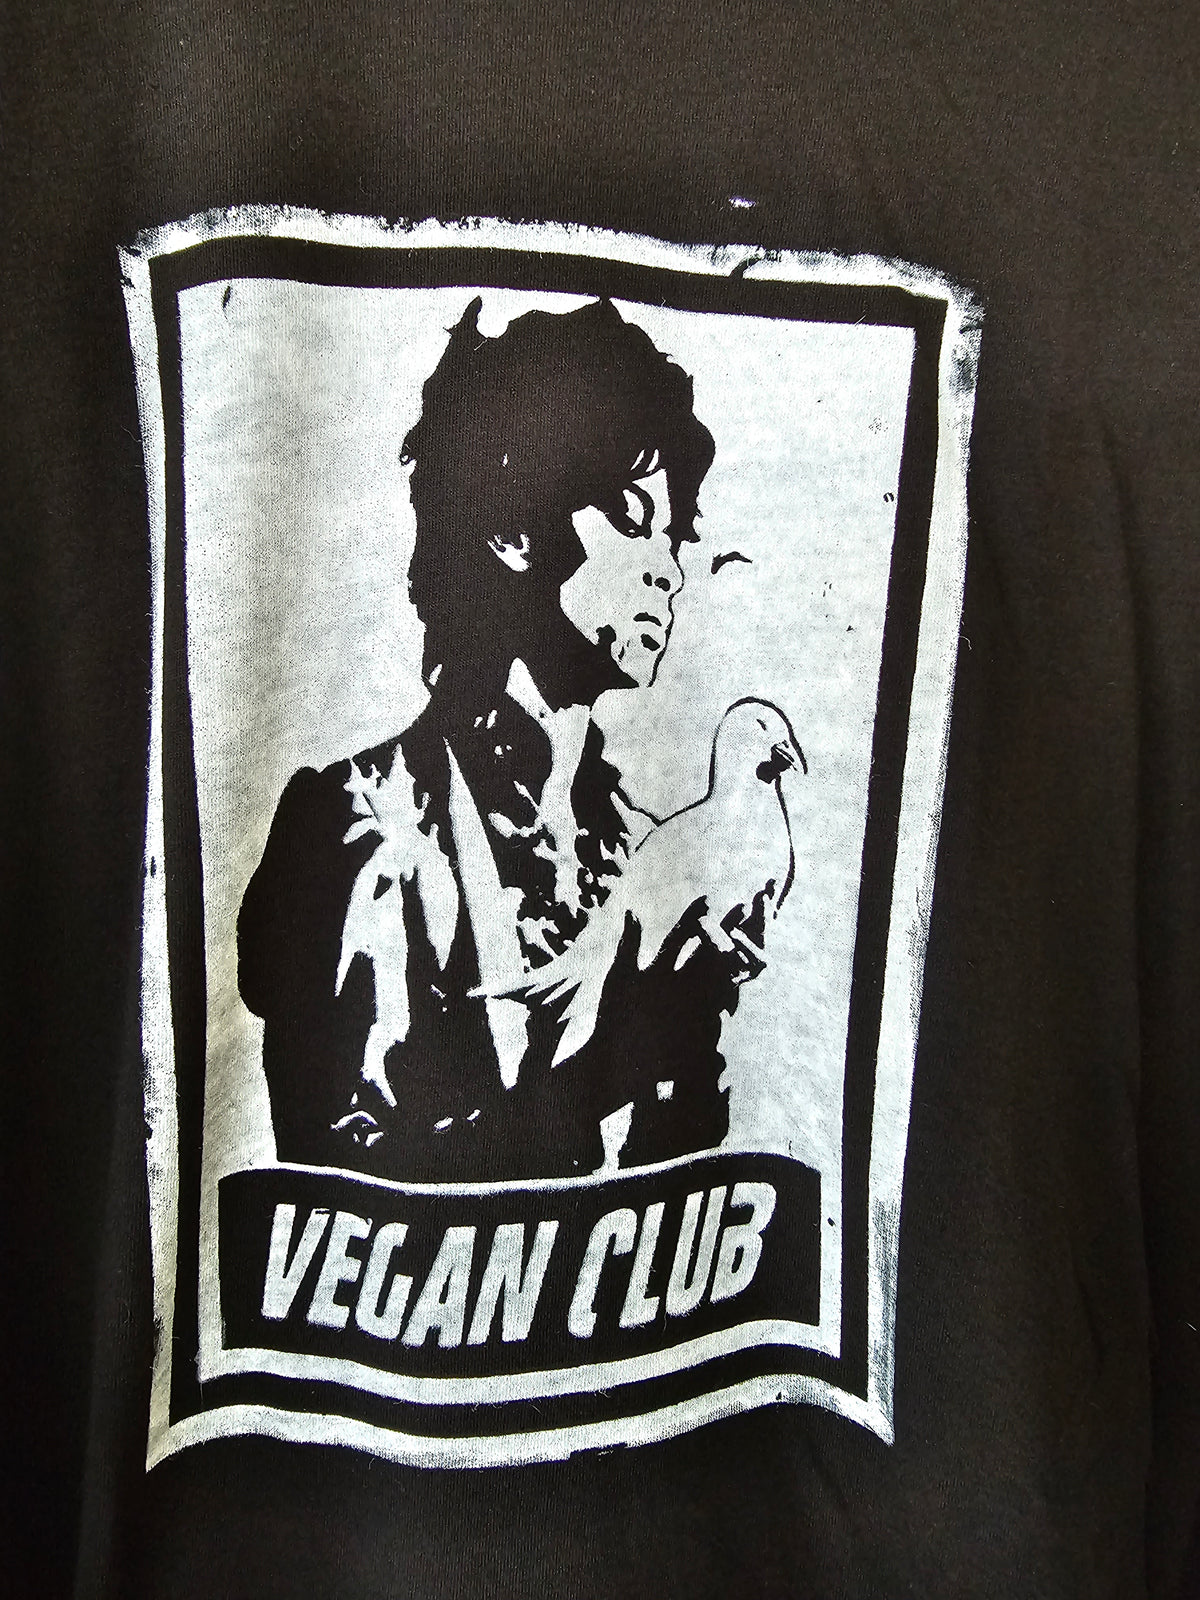 Prince with dove Vegan Club tshirt